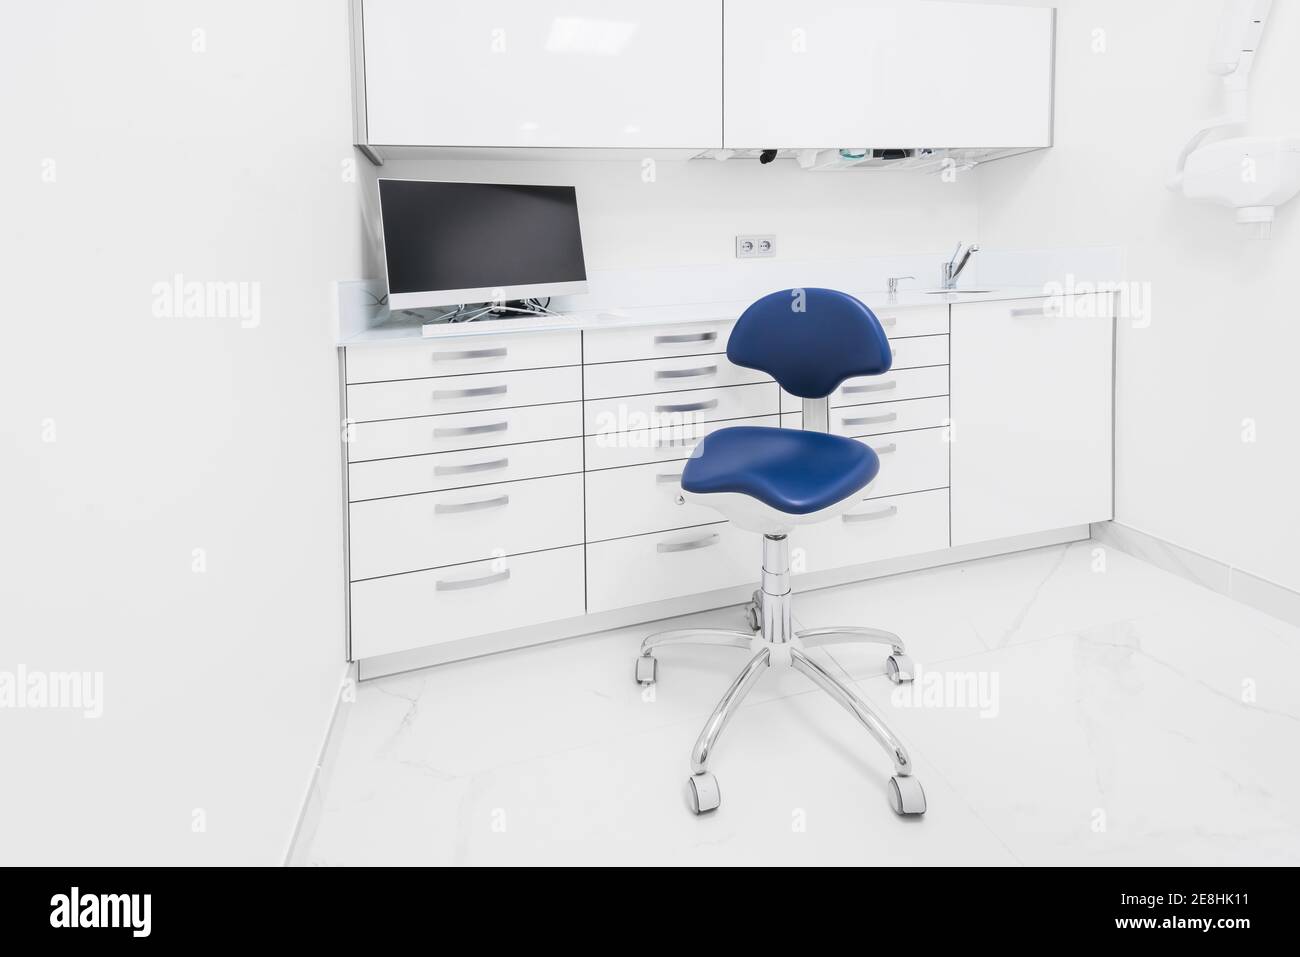 Stilvolles Innenraumdesign des modernen hellen Klinikraumes mit Weiß Möbel und blauer Stuhl Stockfoto